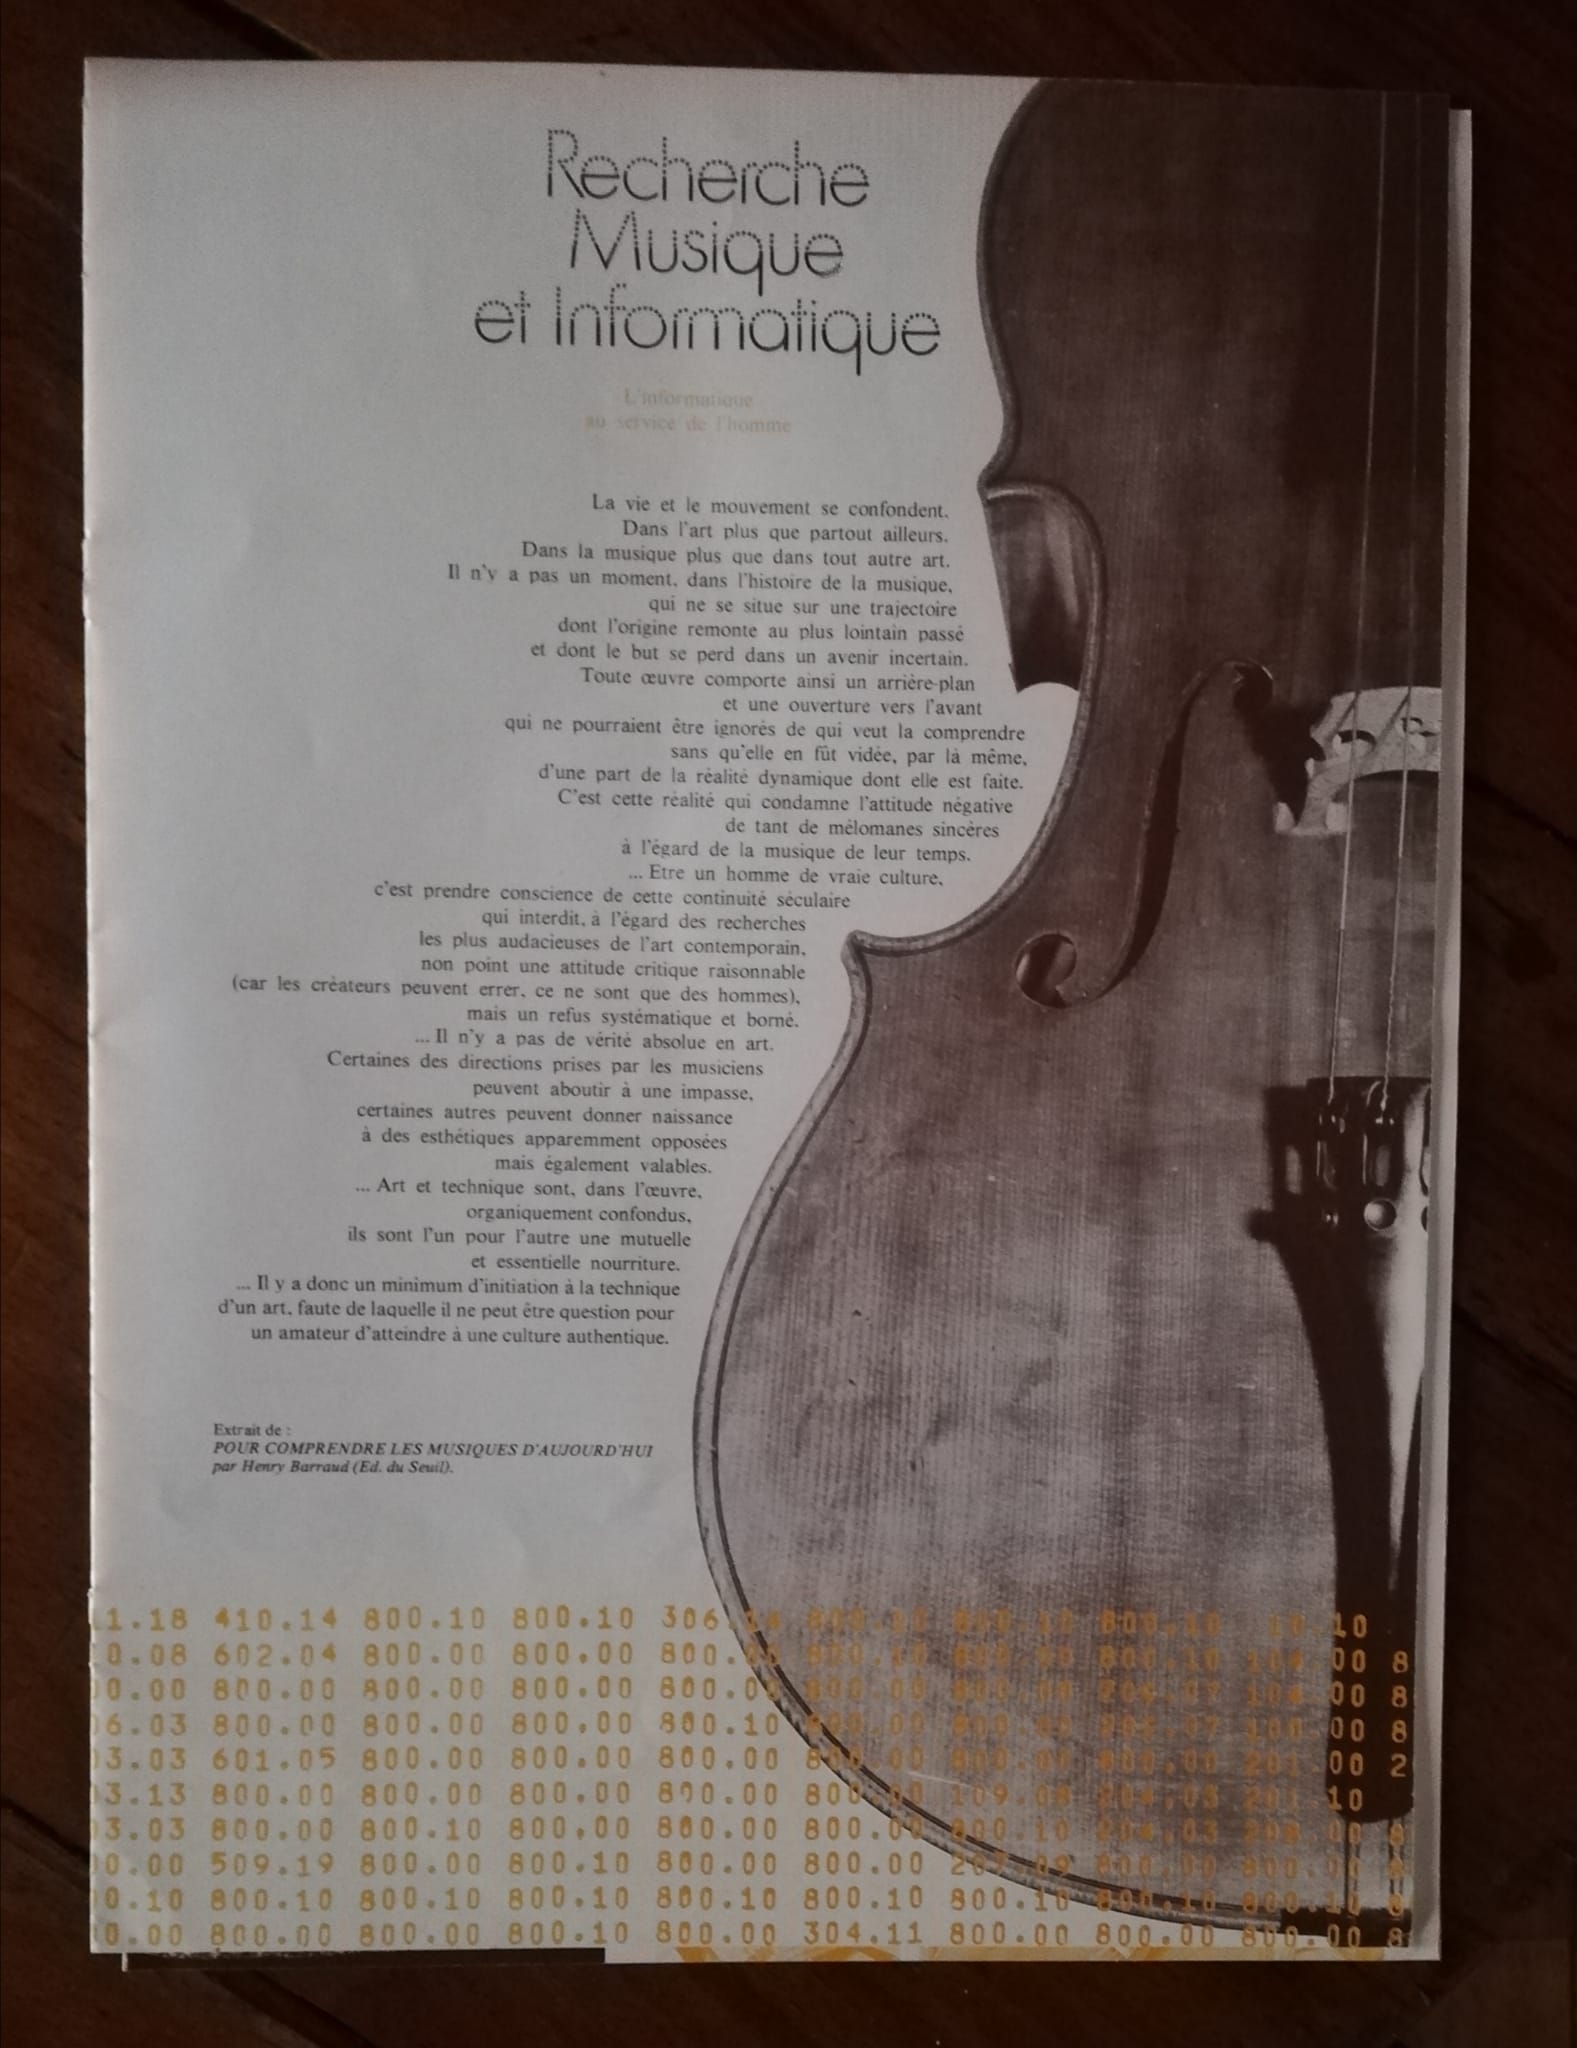 Pierre Barbaud: Recherche Musique et Informatique, 7" & mag, France, 1972 - 55 €